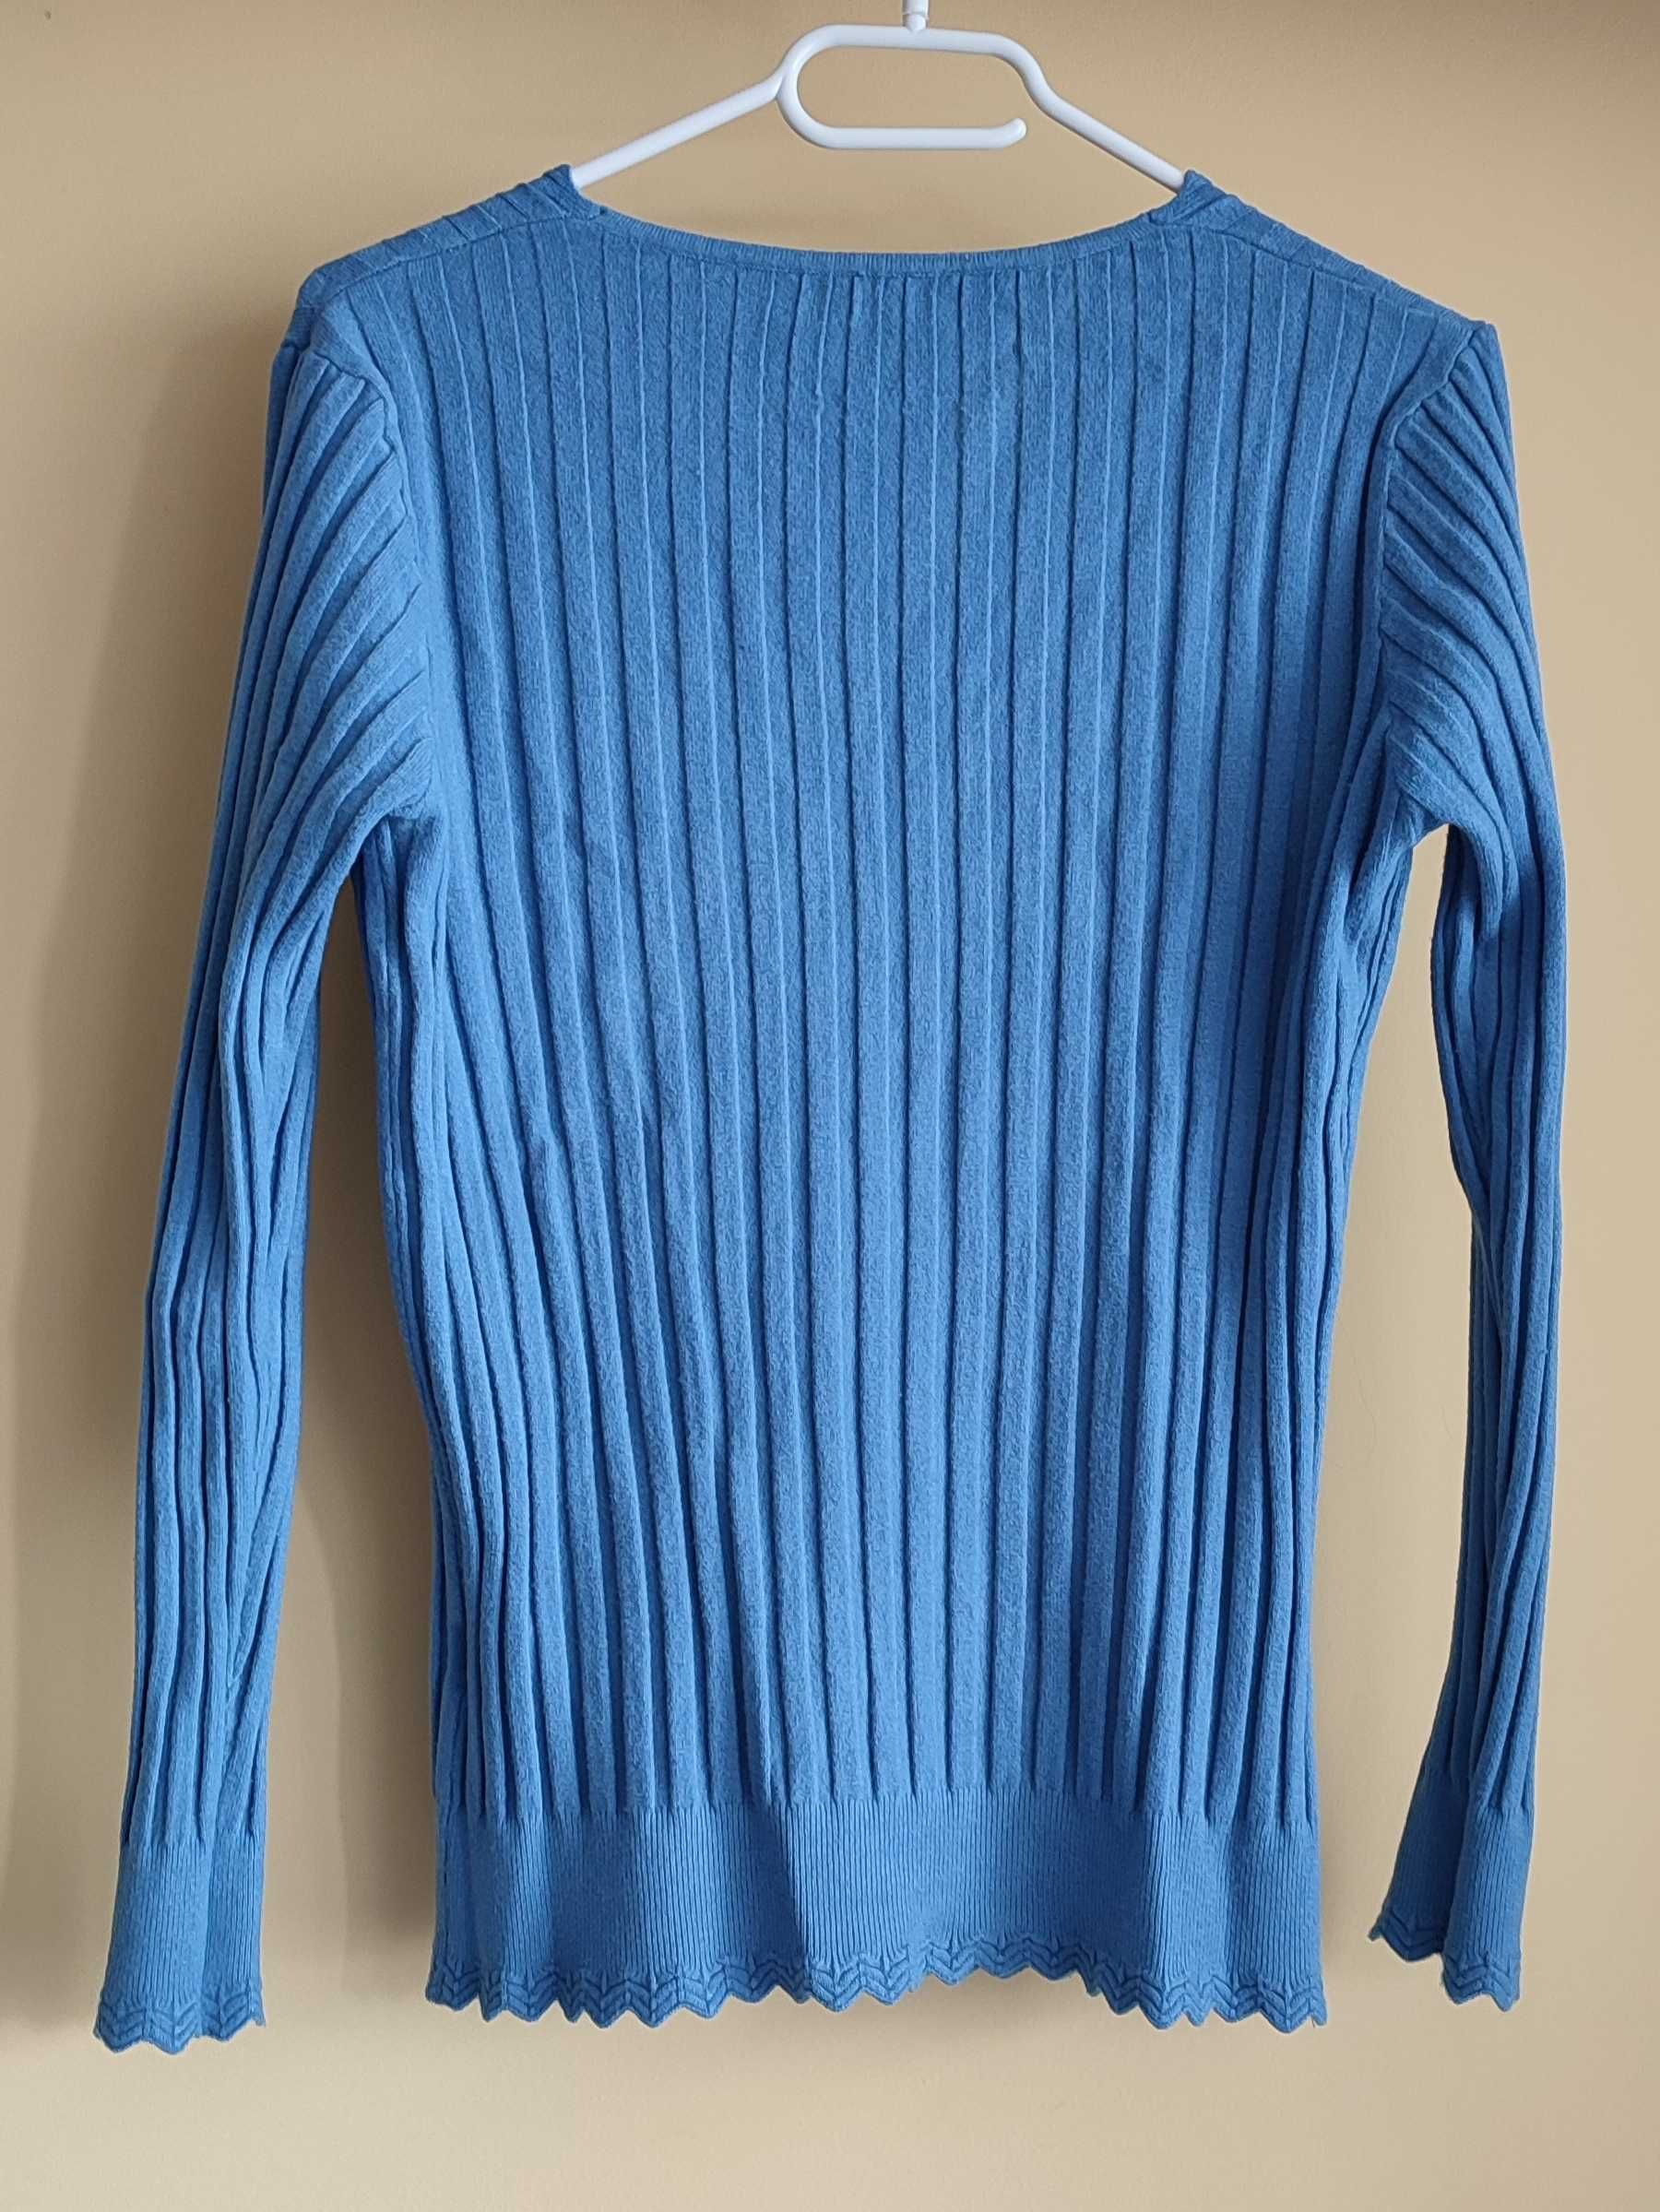 Sweter damski niebieski Kinga XL prążkowany wełna wiskoza kaszmir